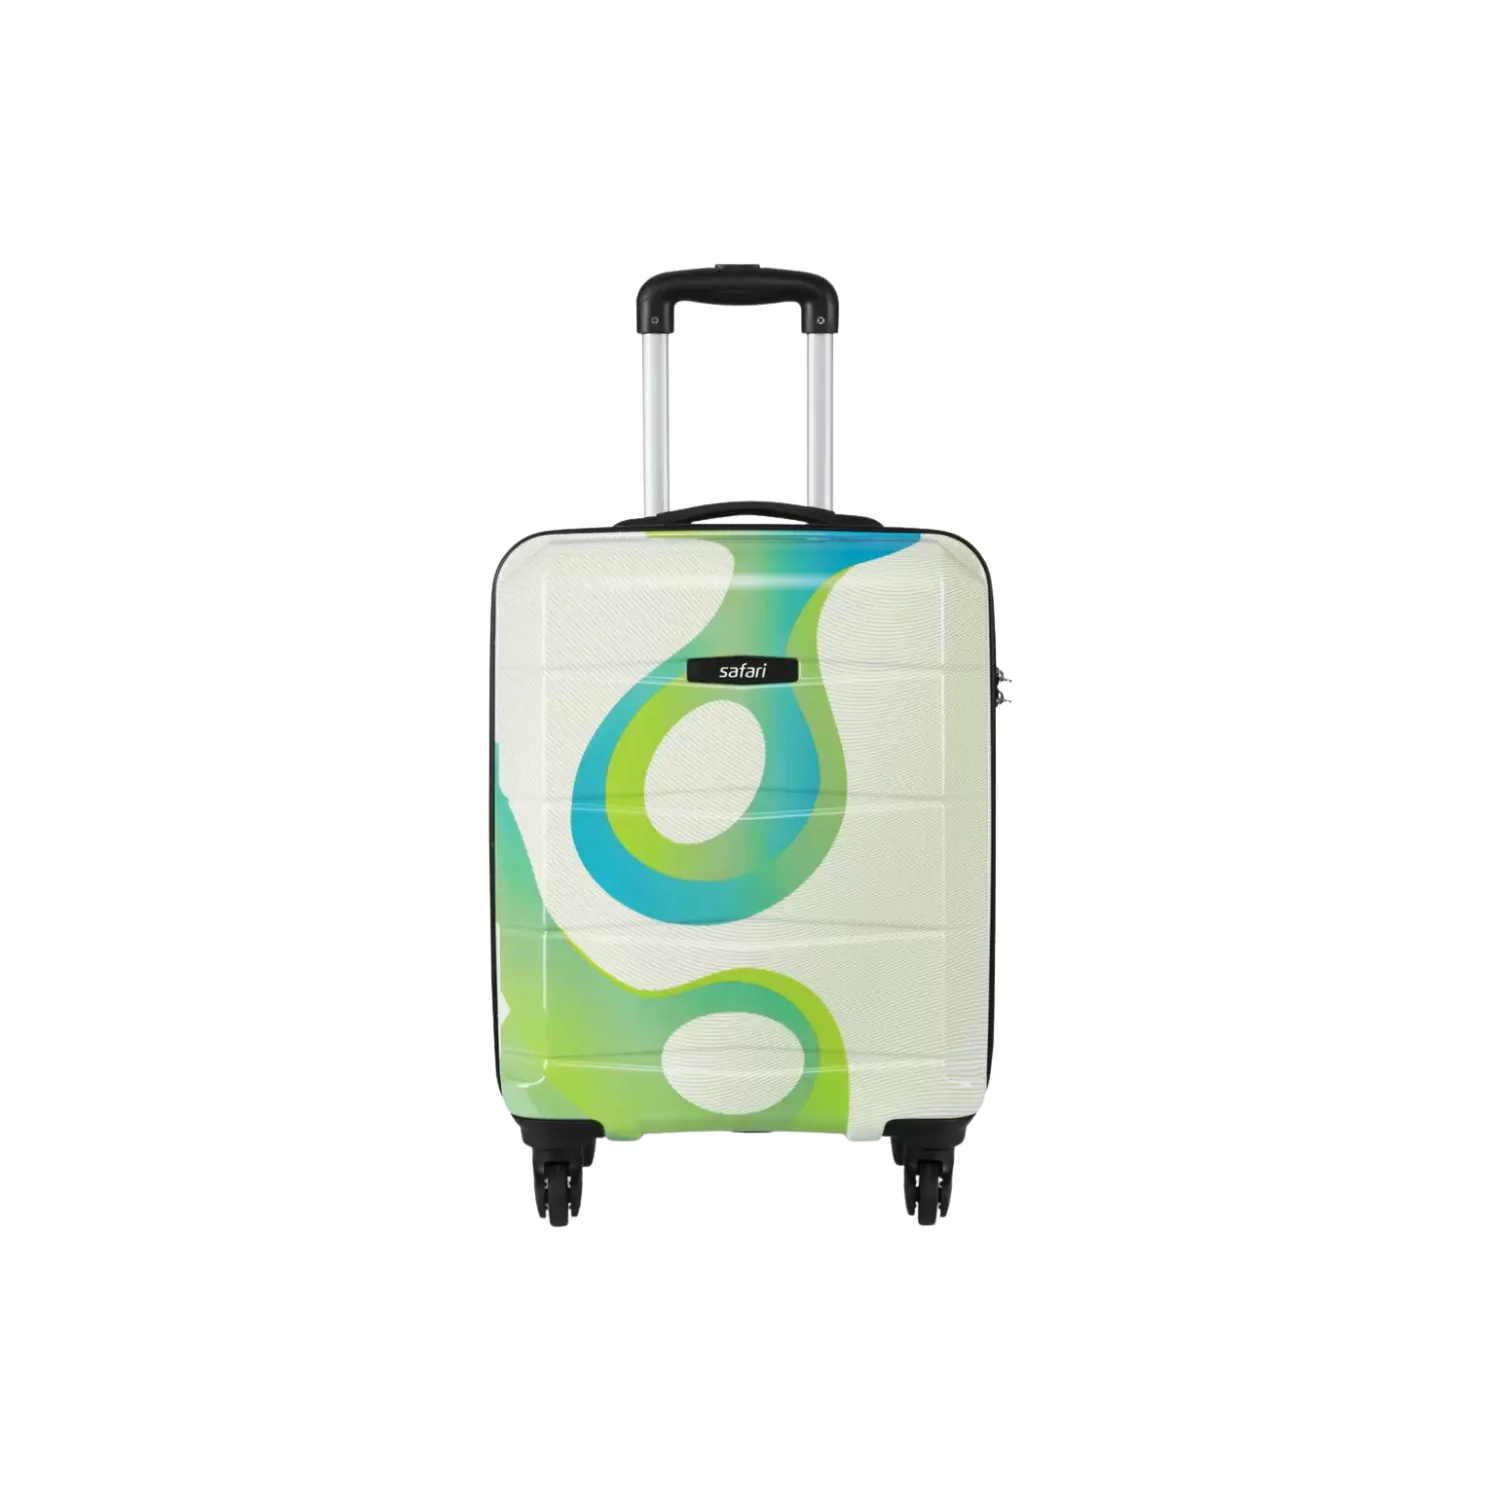 SAFARI Small Cabin Suitcase (55 cm) - TIFFANY 55 PRINTED - Multicolor